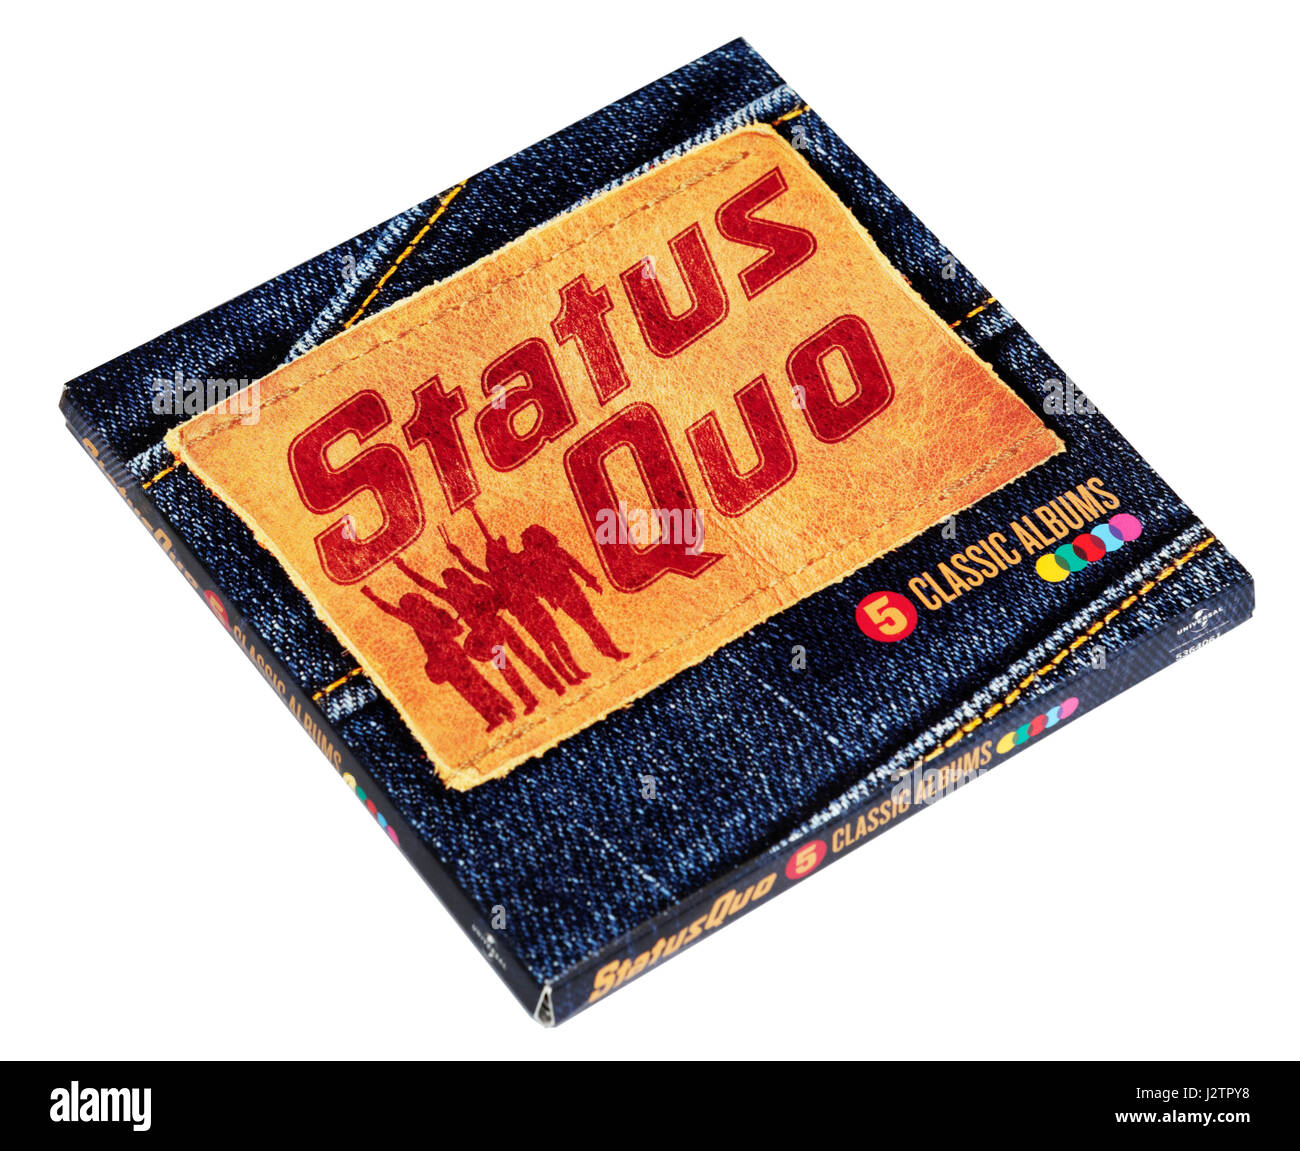 Status Quo: un Box Set di 5 classic albums compresi Blu per voi, Piledriver e sul livello Foto Stock